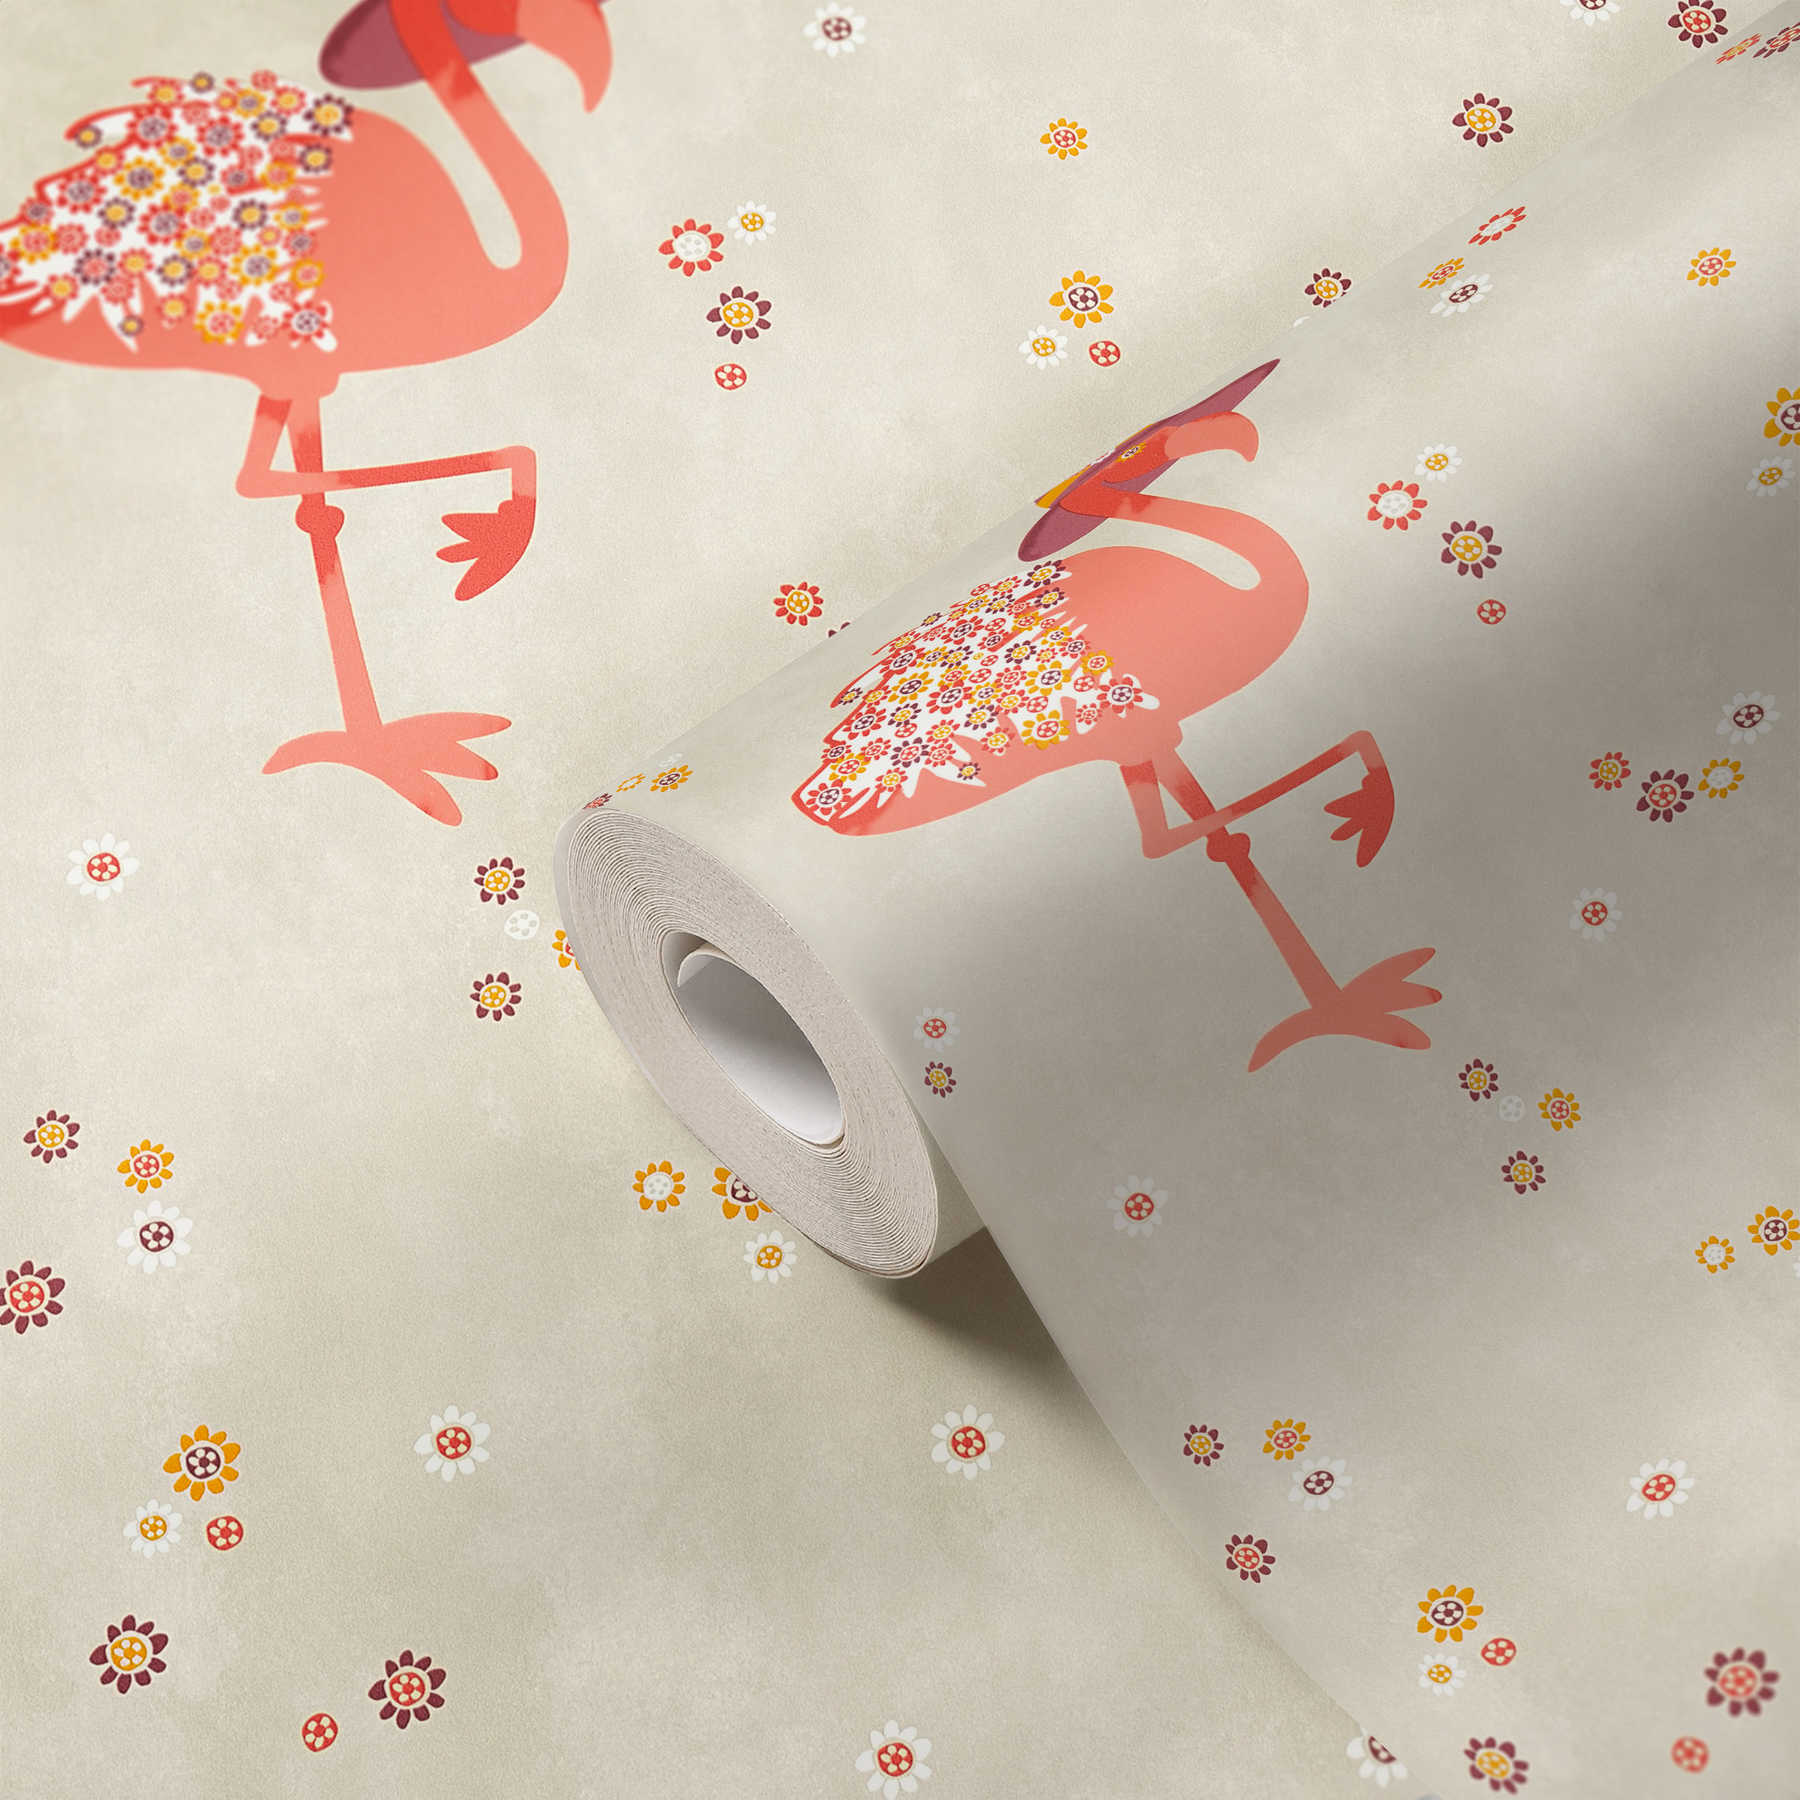             Flamingo Vliestapete mit Blumen Muster für Kinder – Beige, Orange
        